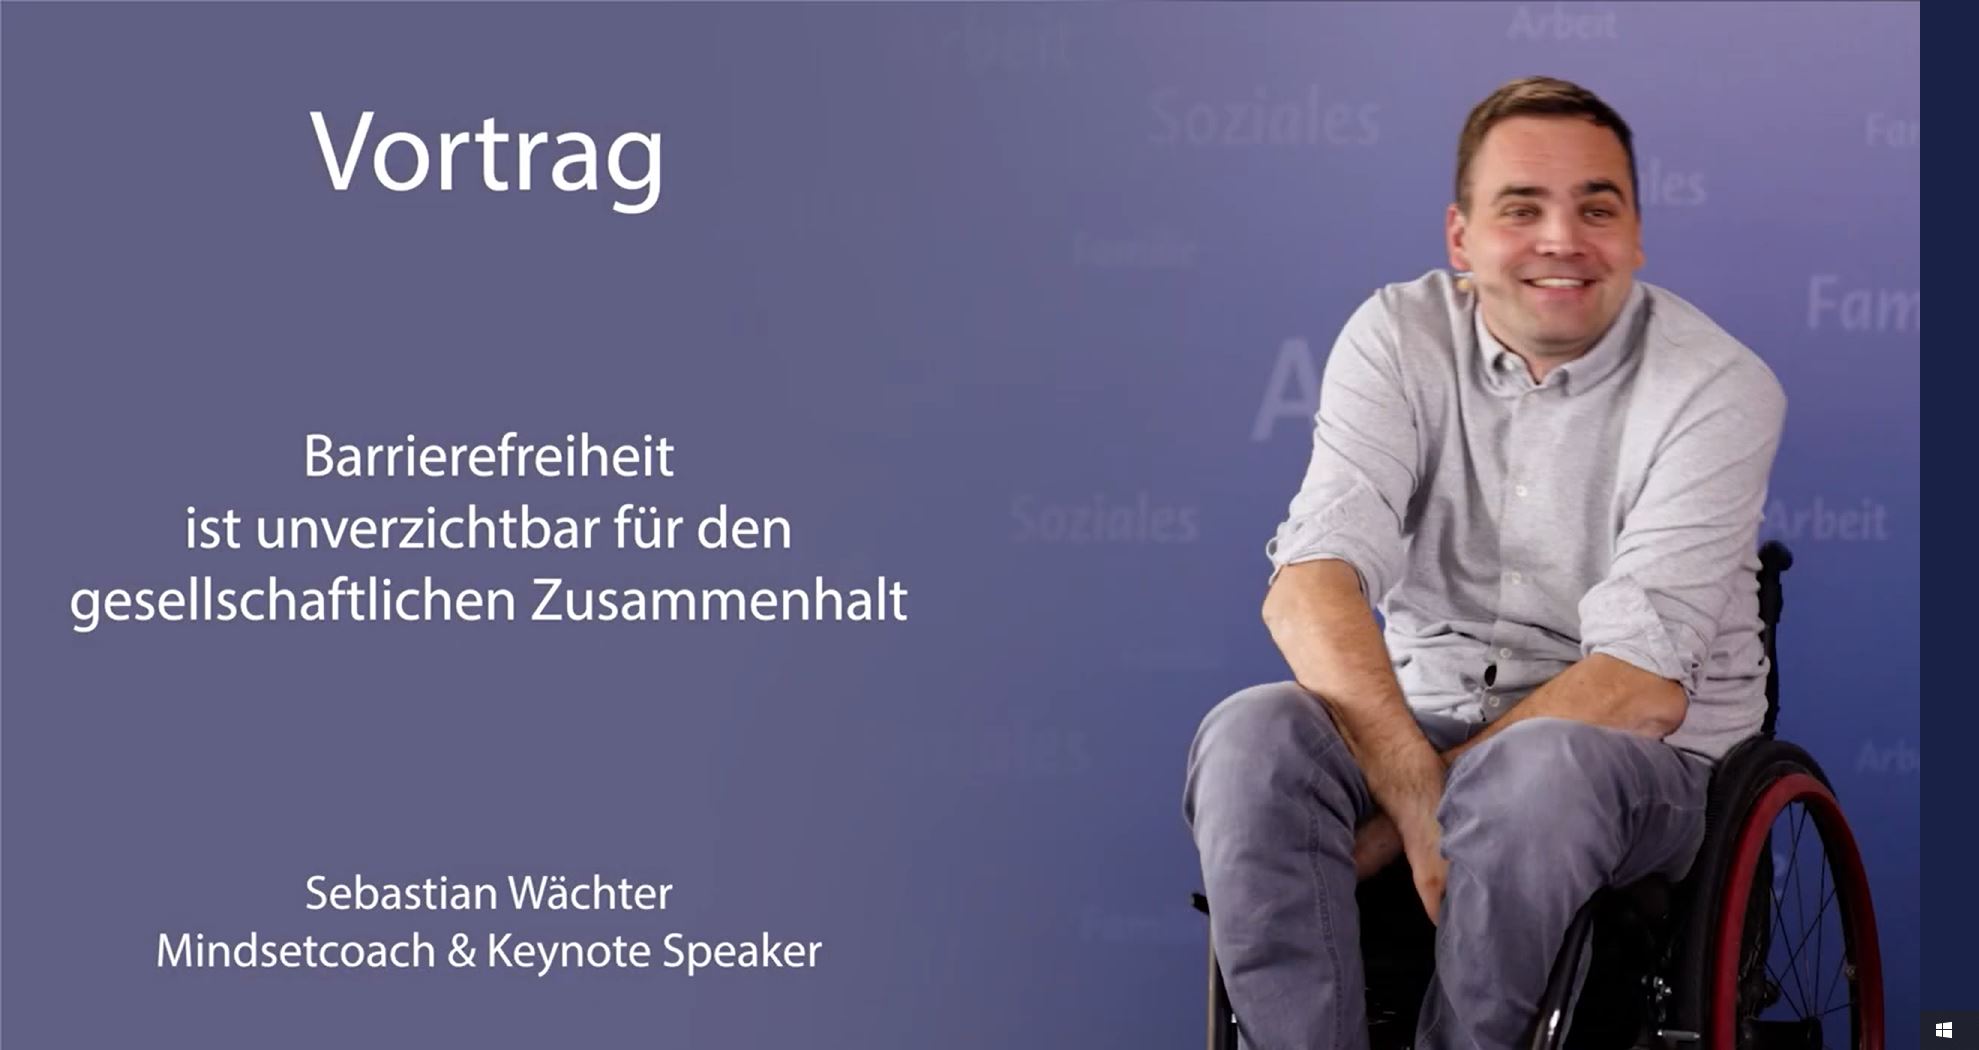 In diesem Video spricht der querschnittgelähmte Sebastian Wächter, Mindset Coach und Keynote Speaker, über die Bedeutung der Barrierefreiheit für den gesellschaftlichen Zusammenhalt.